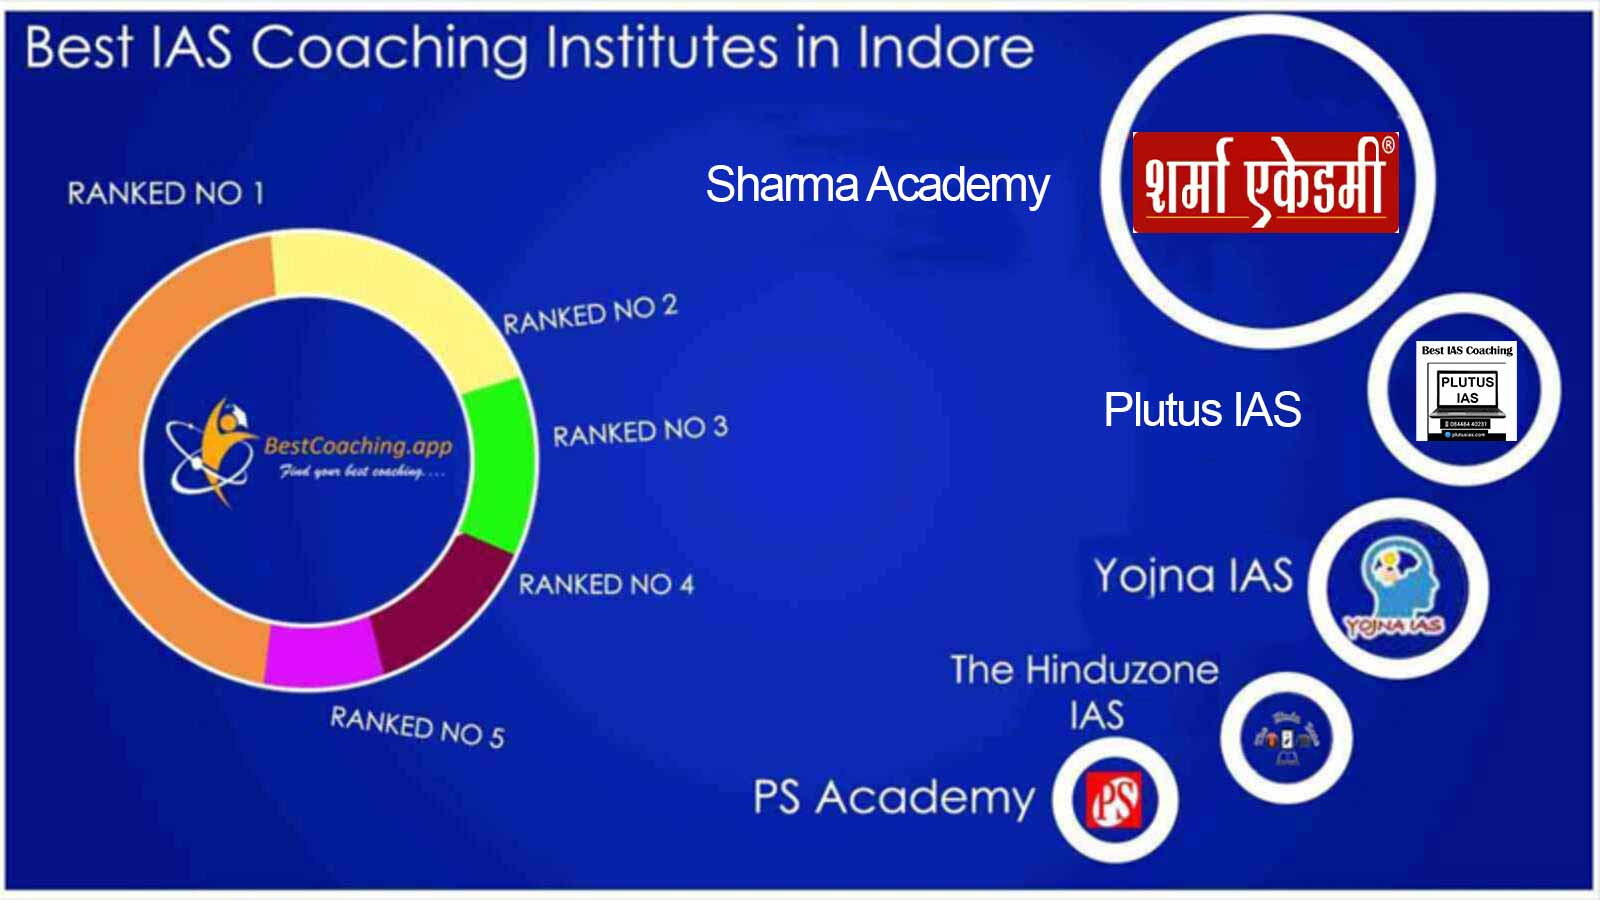 Best IAS Coaching institutes in Indore